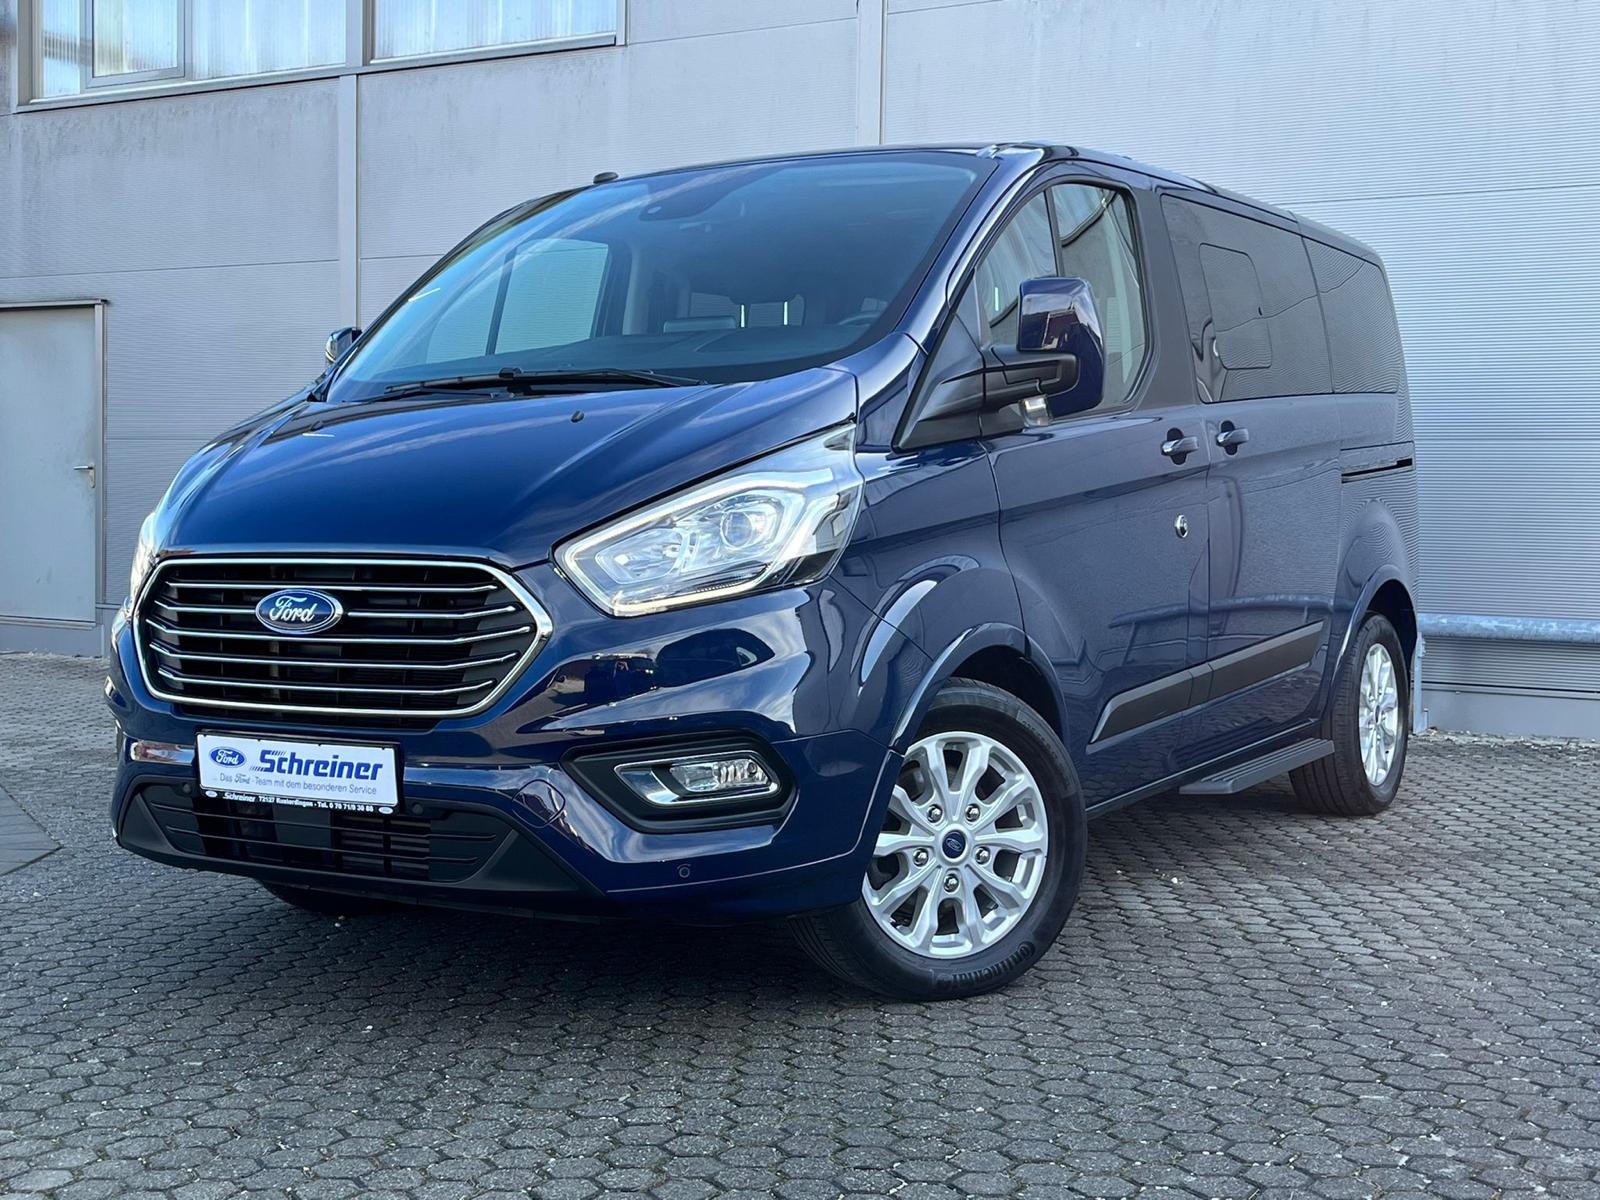 Ford Transit Tourneo Custom gebraucht kaufen in Kusterdingen Preis 37490  eur - Int.Nr.: 657 VERKAUFT